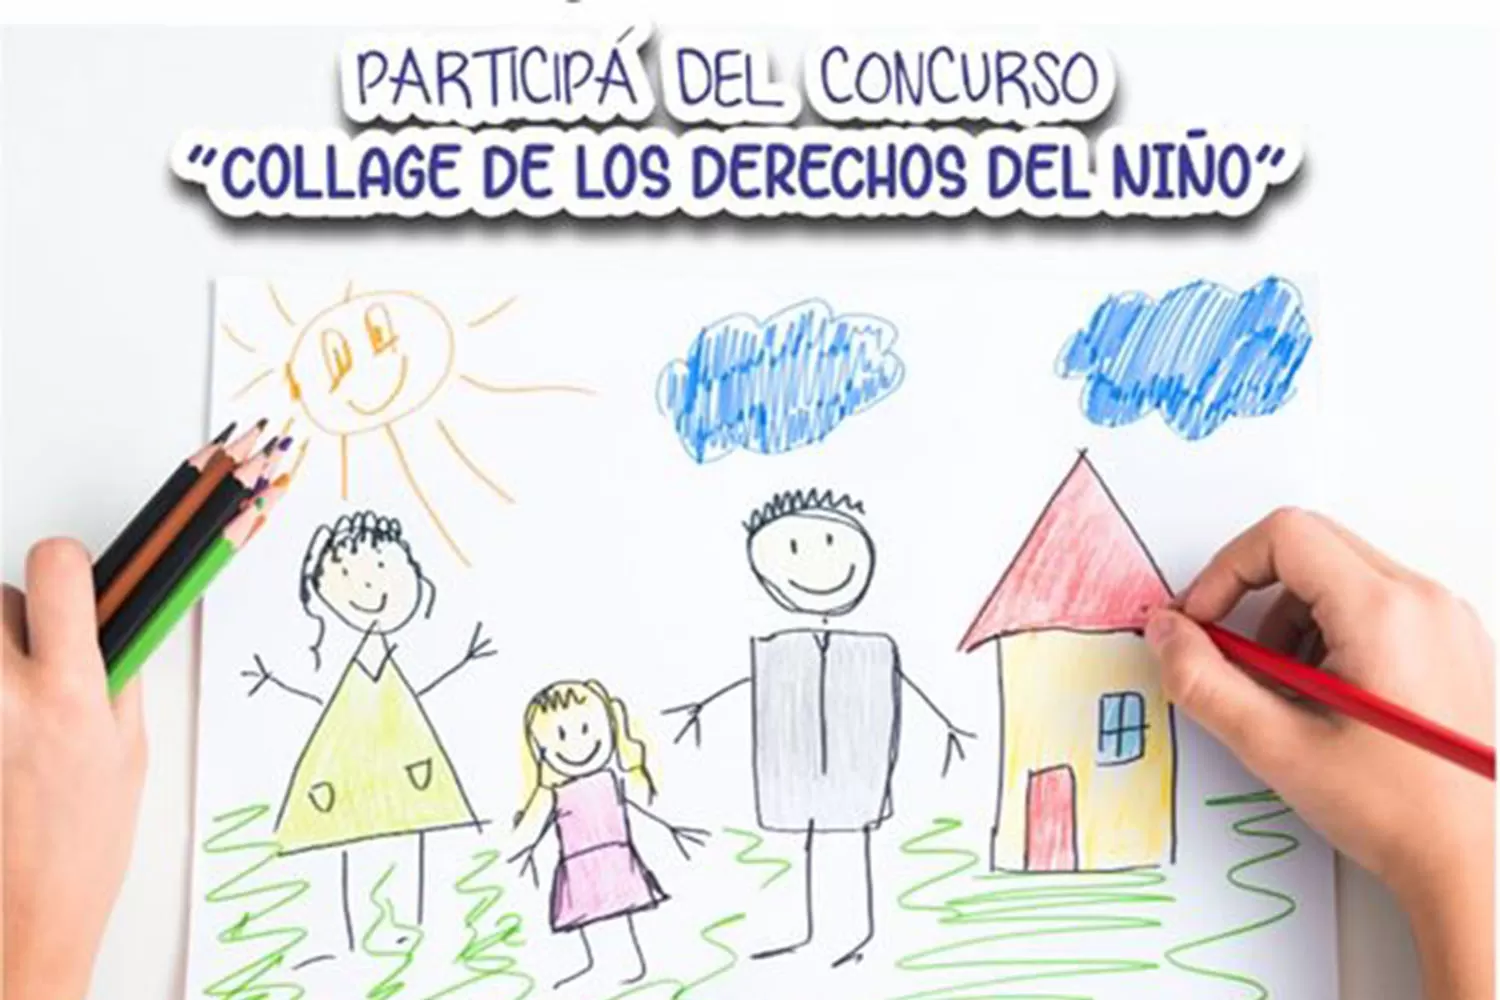 Derechos del niño: concurso de collage organizado por el municipio para niños y adolescentes